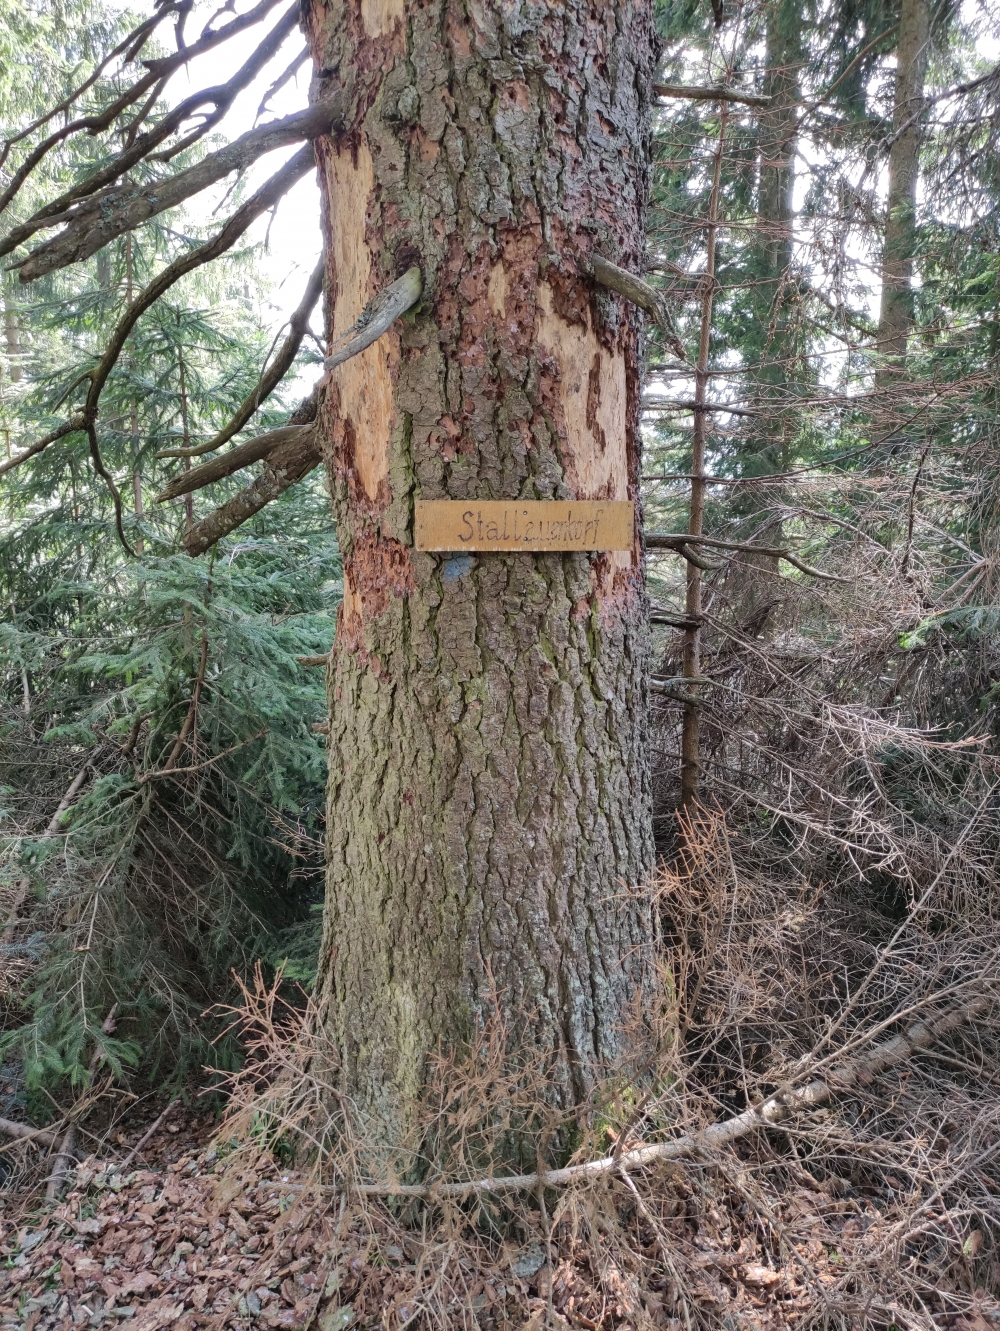 Stallauer Kopf: Der Baum markiert den Stallauer Kopf